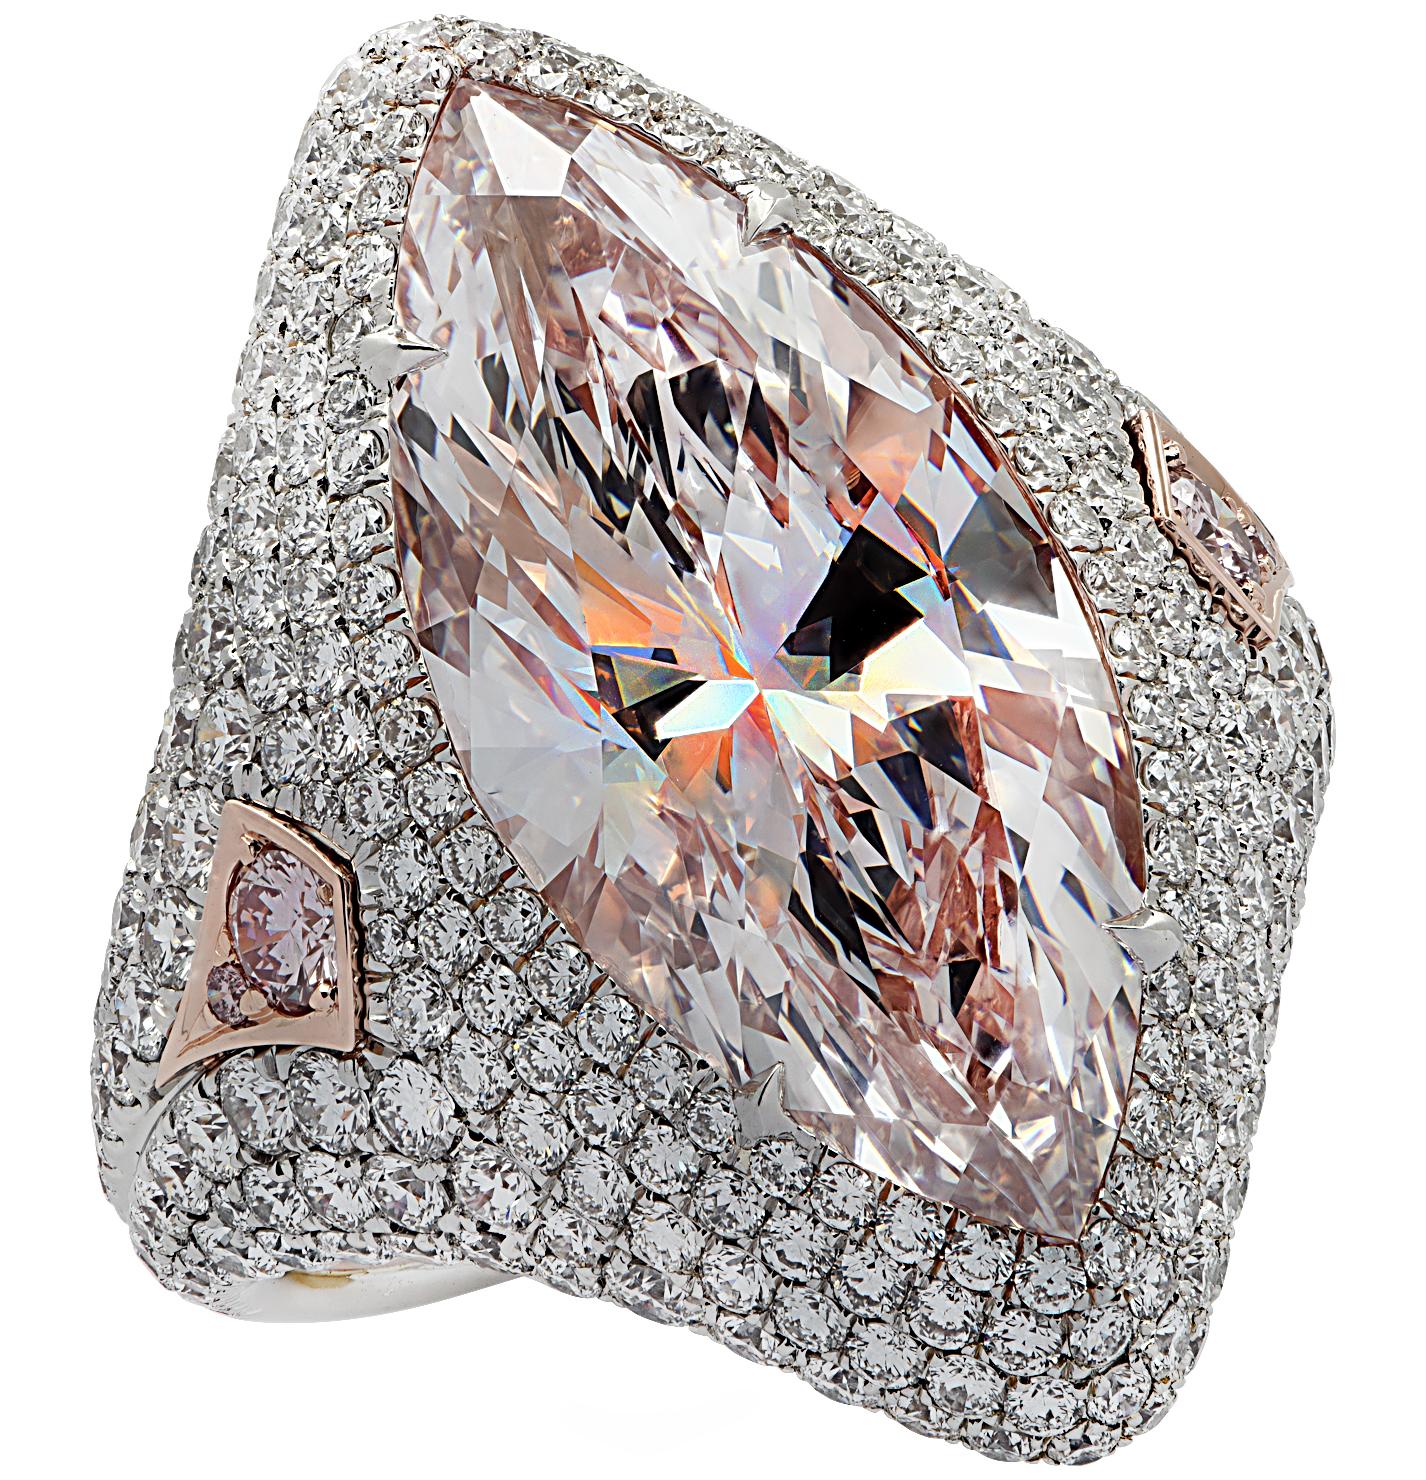 Modern Vivid Diamonds GIA Certified 9.97 Carat Pink Marquise Cut Diamond Ring